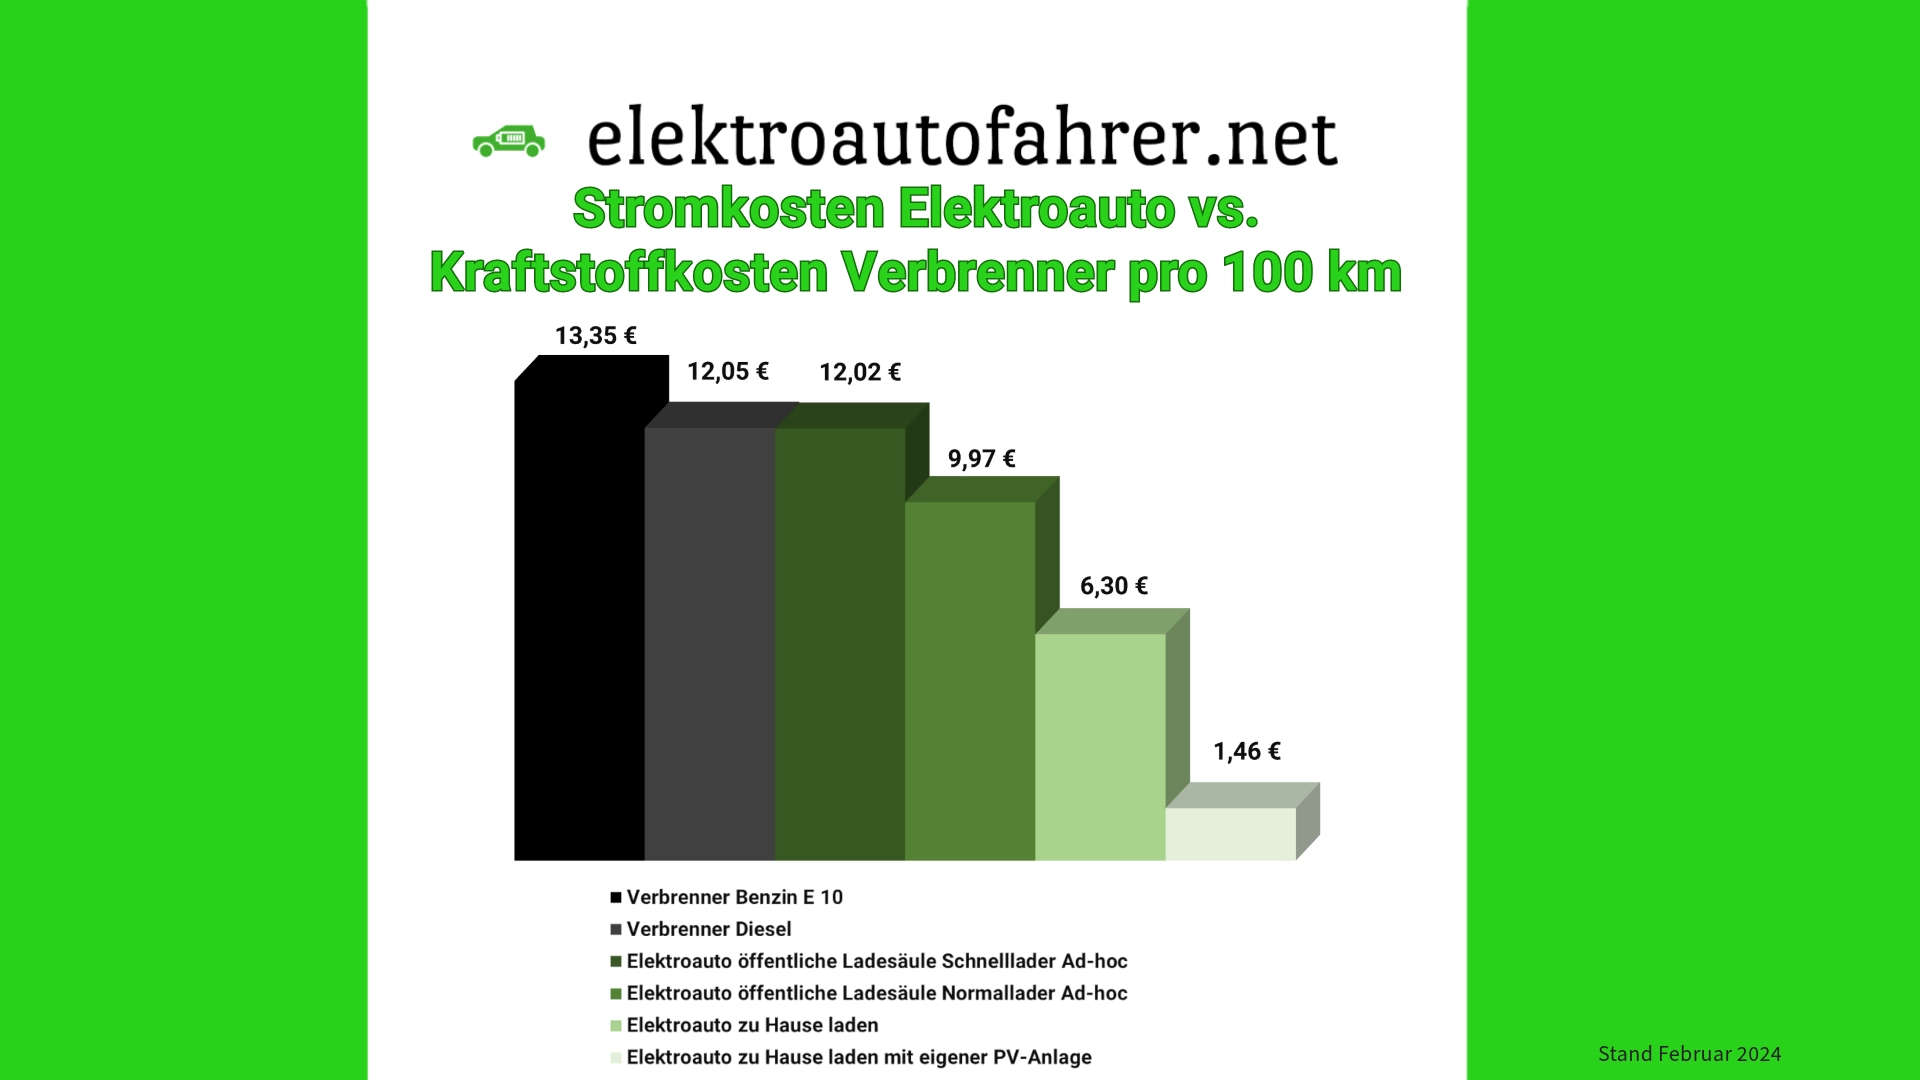 Vergleich Stromkosten Elektroauto vs. Spritkosten Verbrenner - Stand Februar 2024